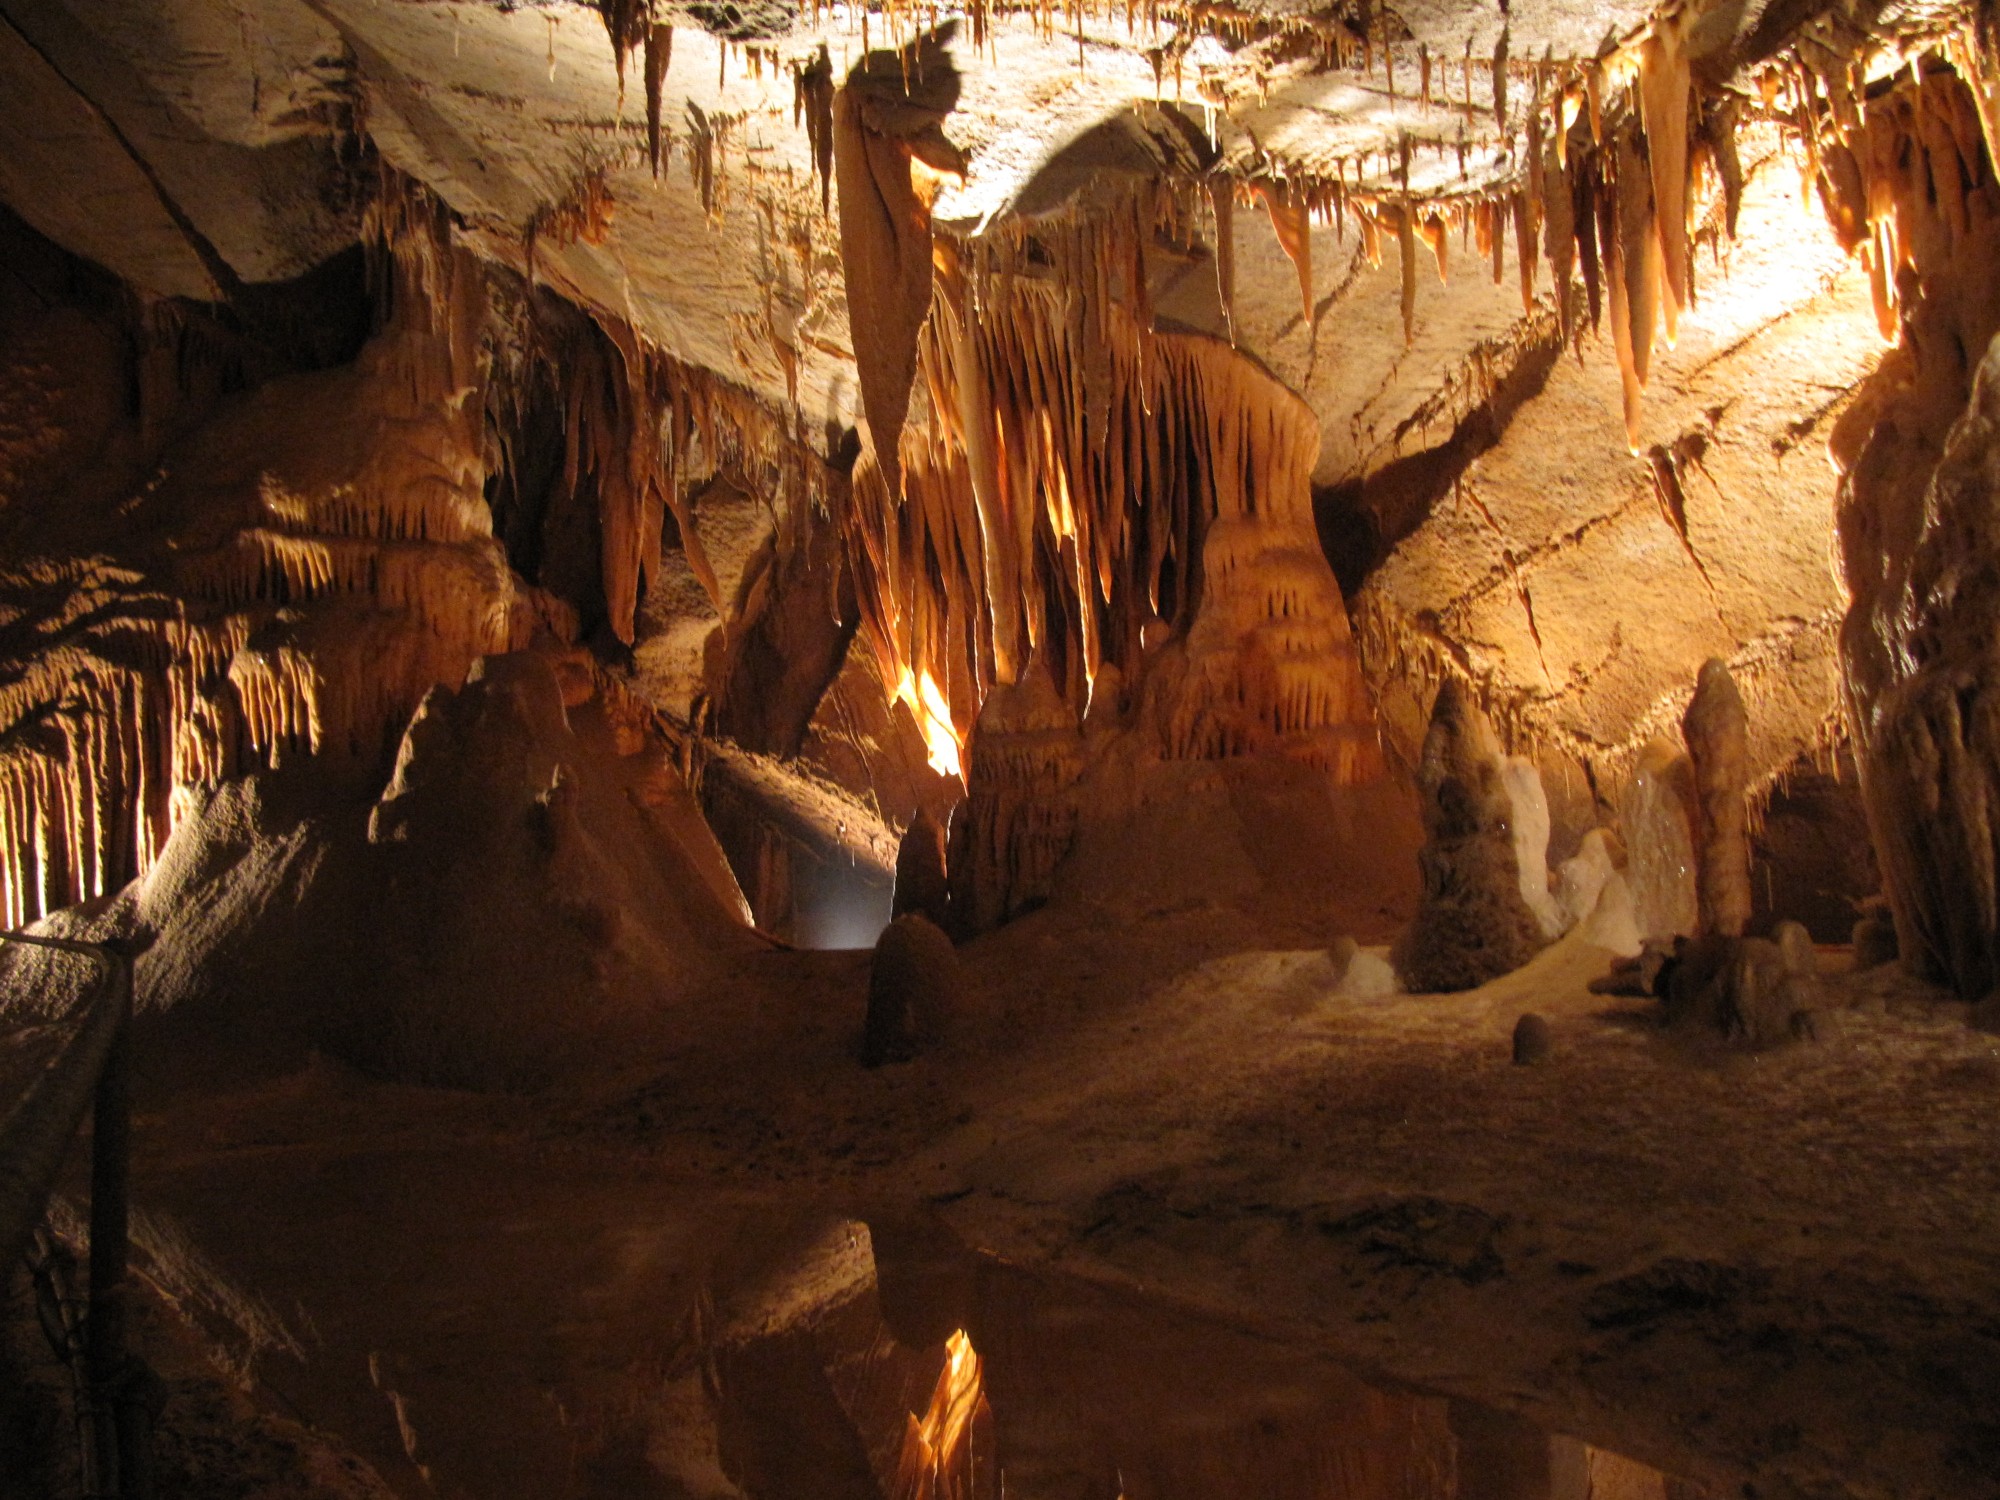 Résultat de recherche d'images pour "photos de la grotte de la cocalière"